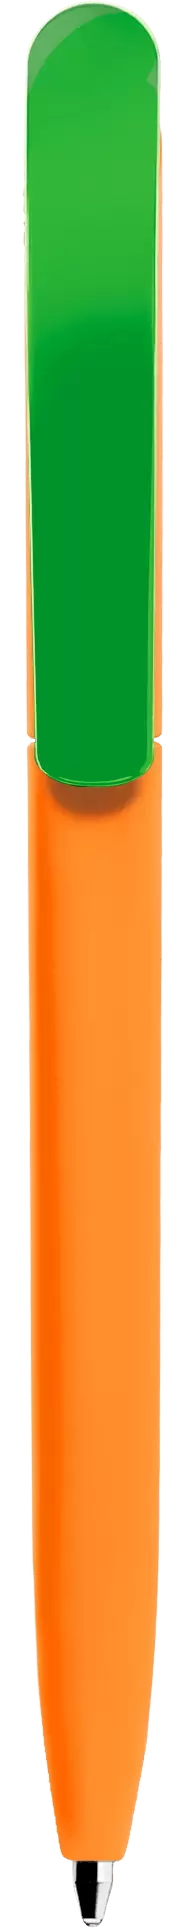 Ручка VIVALDI SOFT MIX Оранжевя с салатовым 1333-05-15